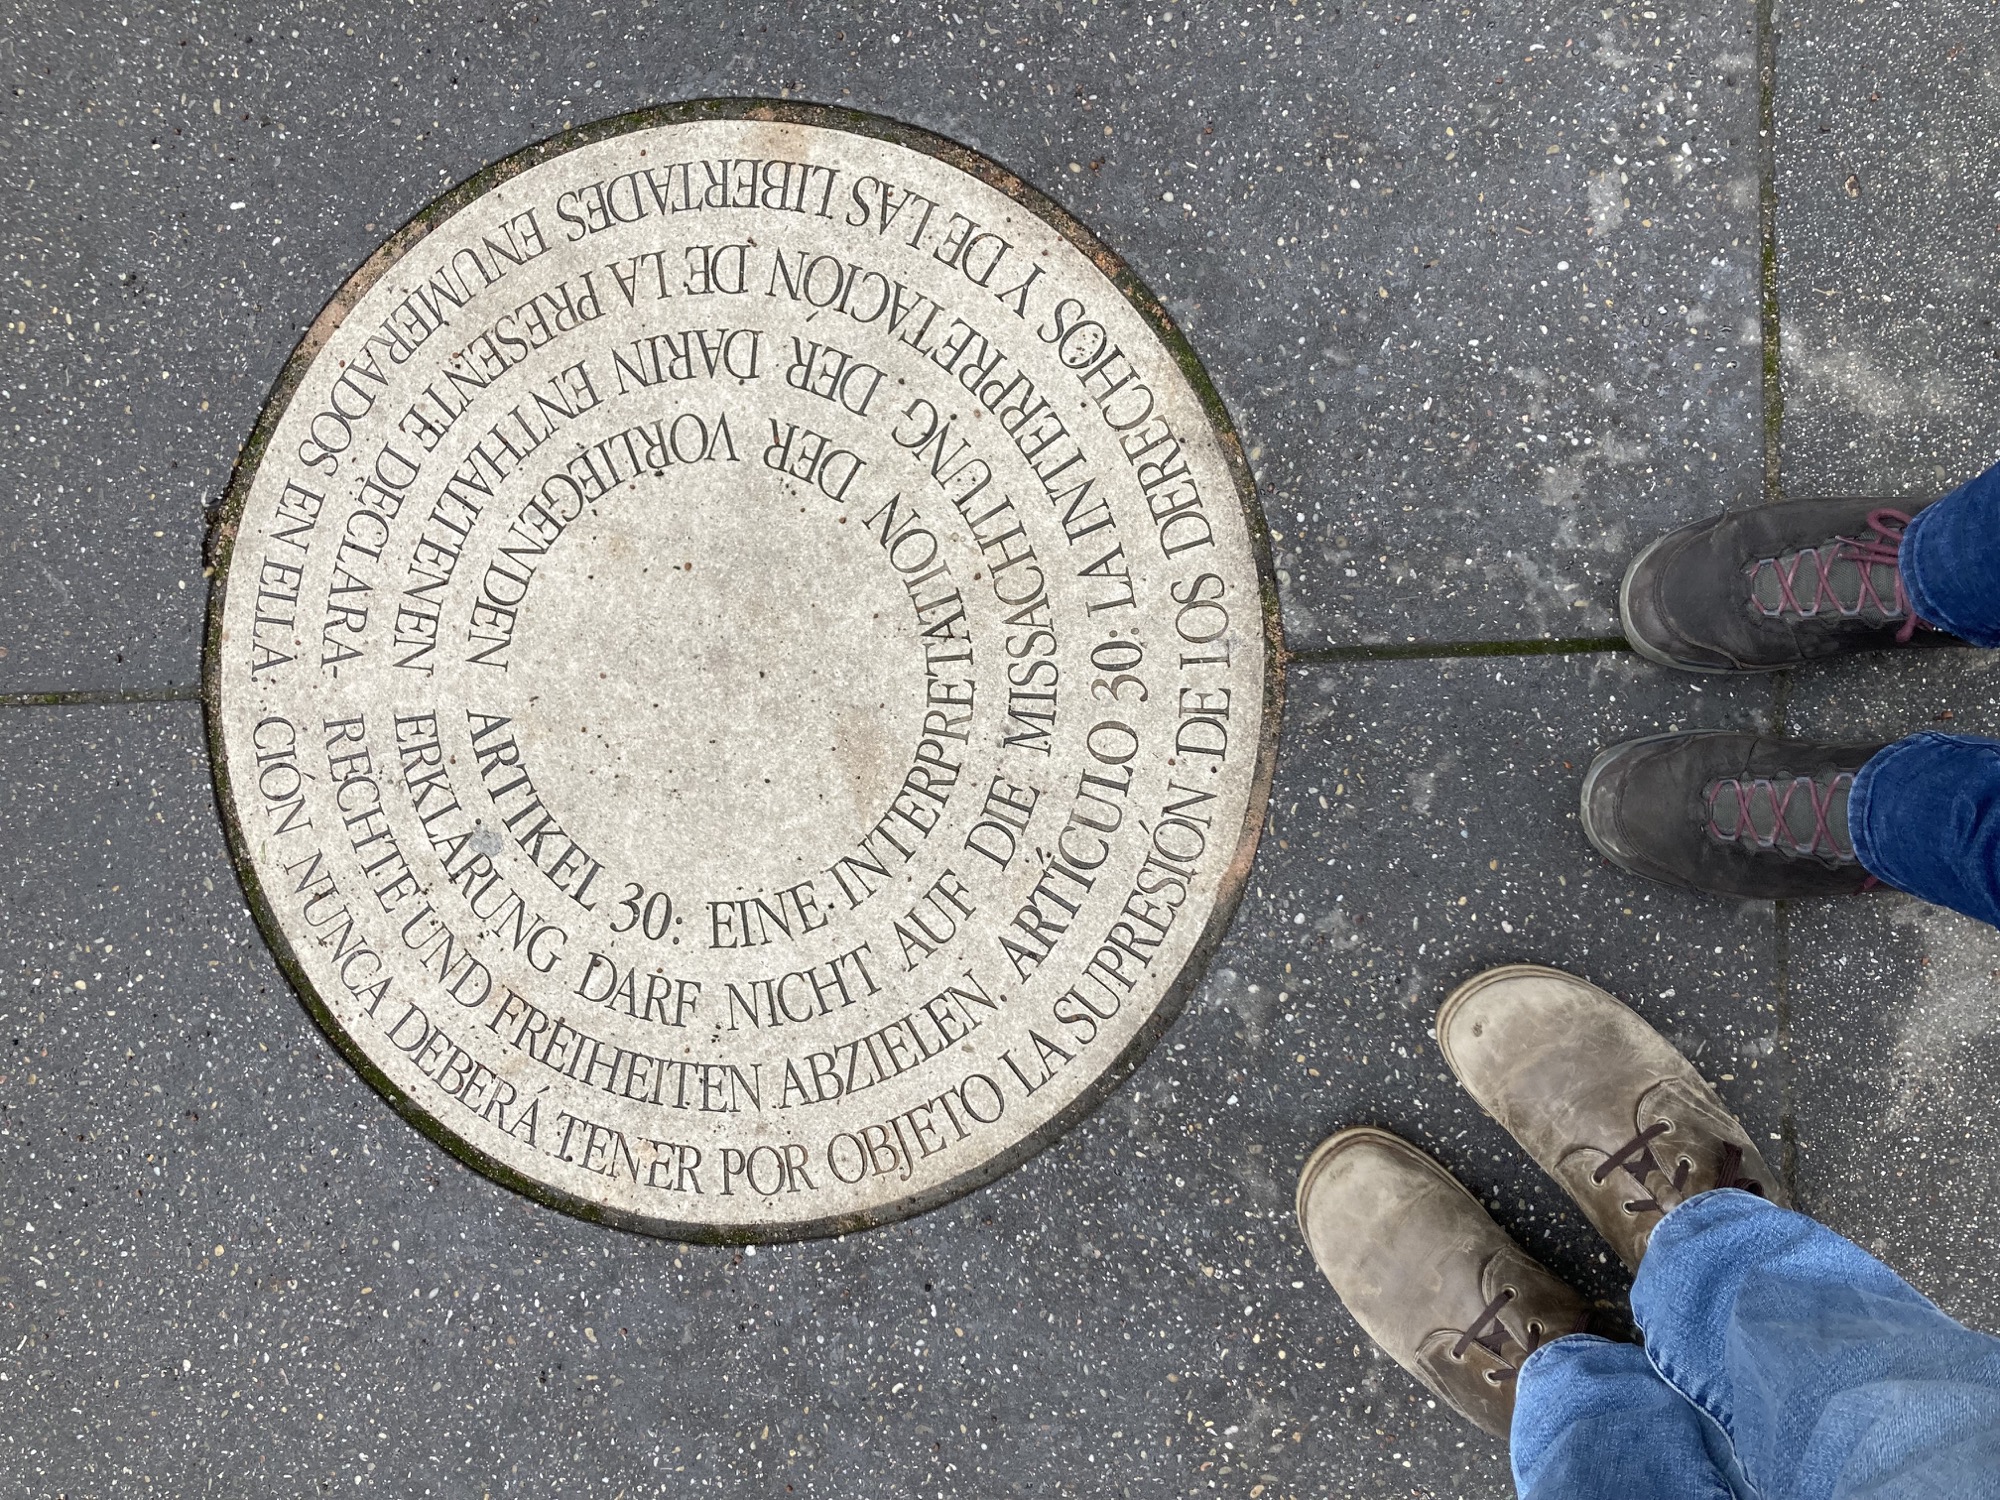 Artikel 30 der Deklaration der Menschenrechte, eingelassen in einer runden Bodenplatte, daneben die Füße mit Schuhen von zwei Menschen